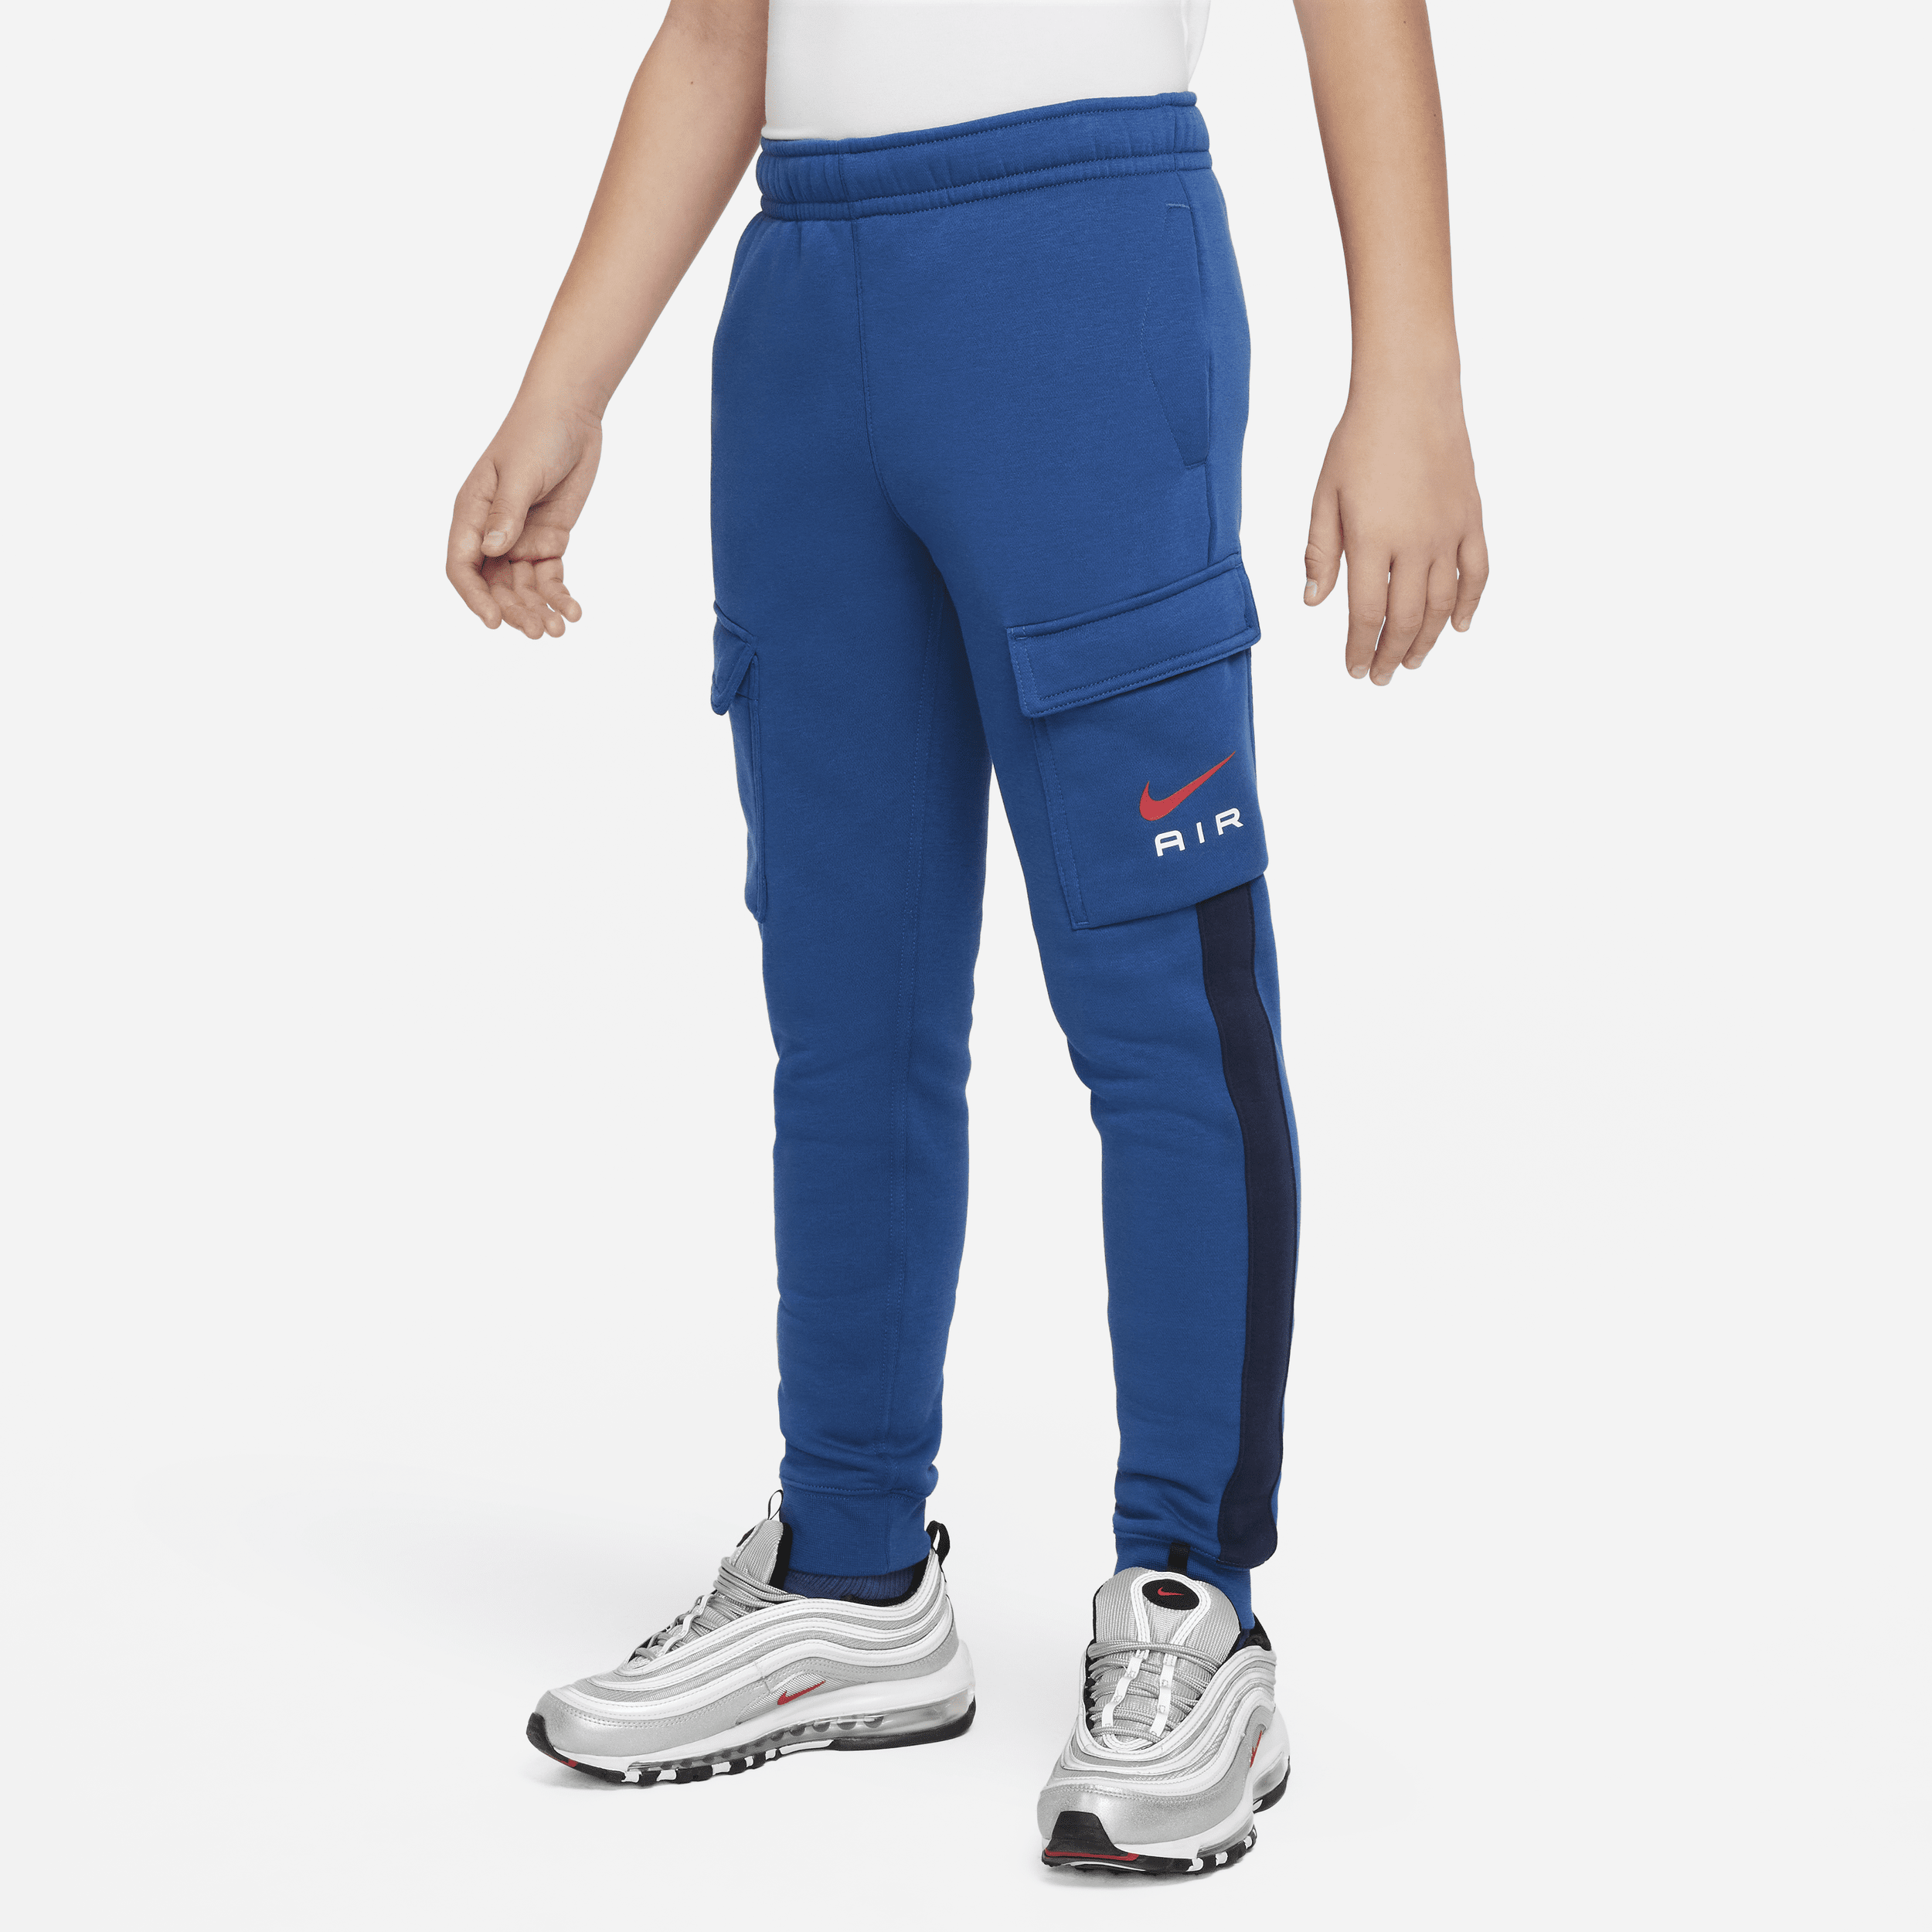 Pantaloni cargo in fleece Nike Air – Ragazzi - Blu